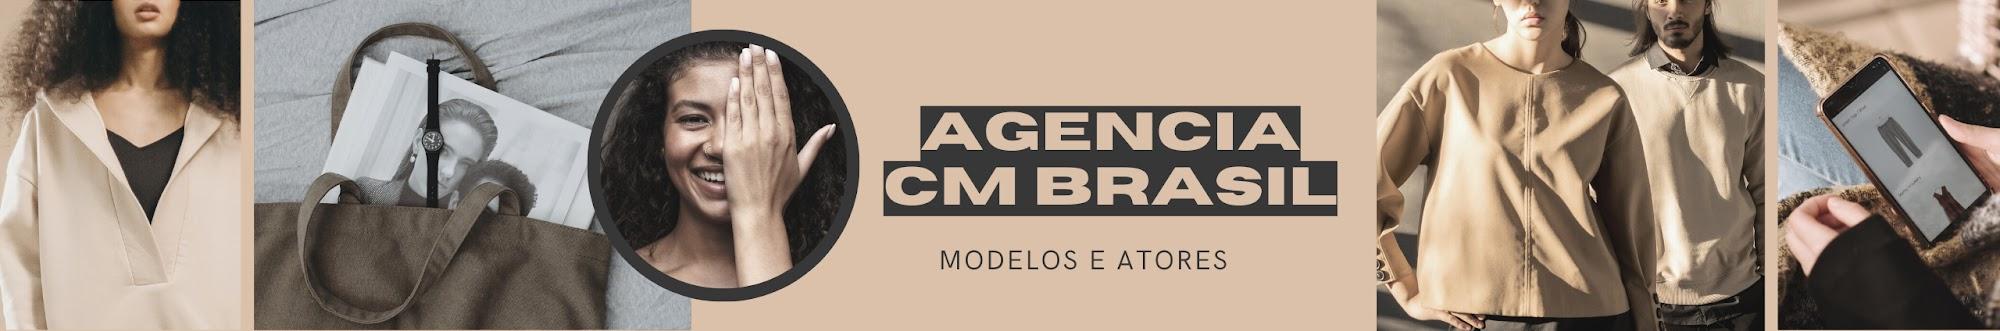 Agencia CM Brasil